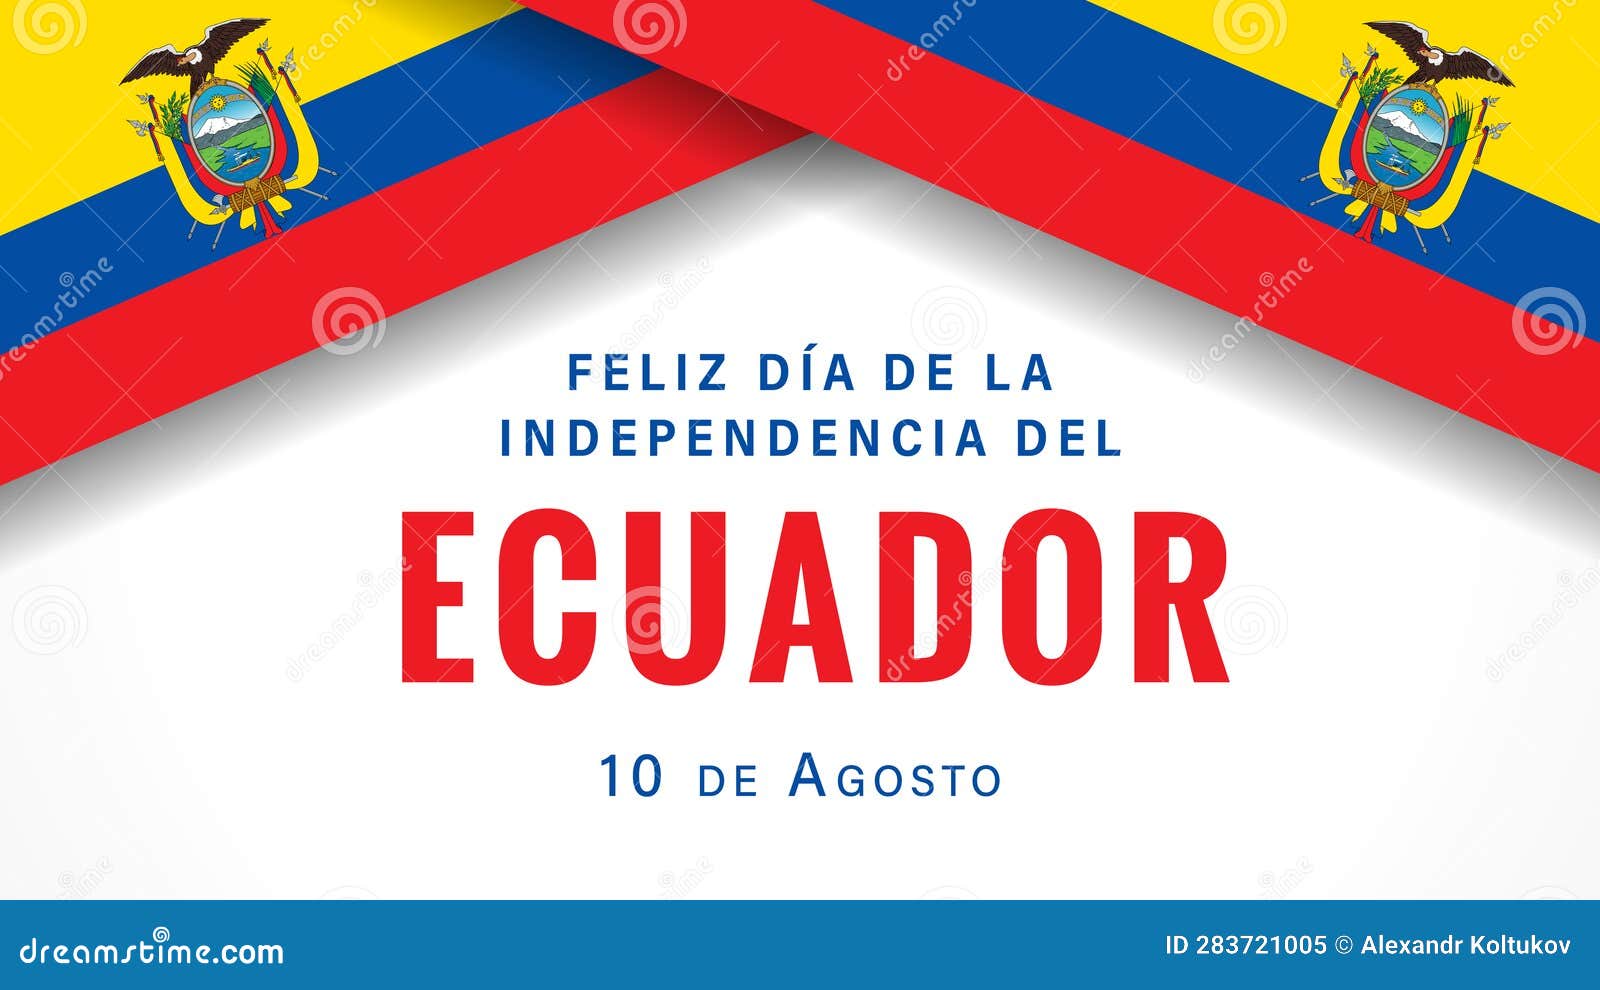 feliz dia de la independencia del ecuador banner with flags